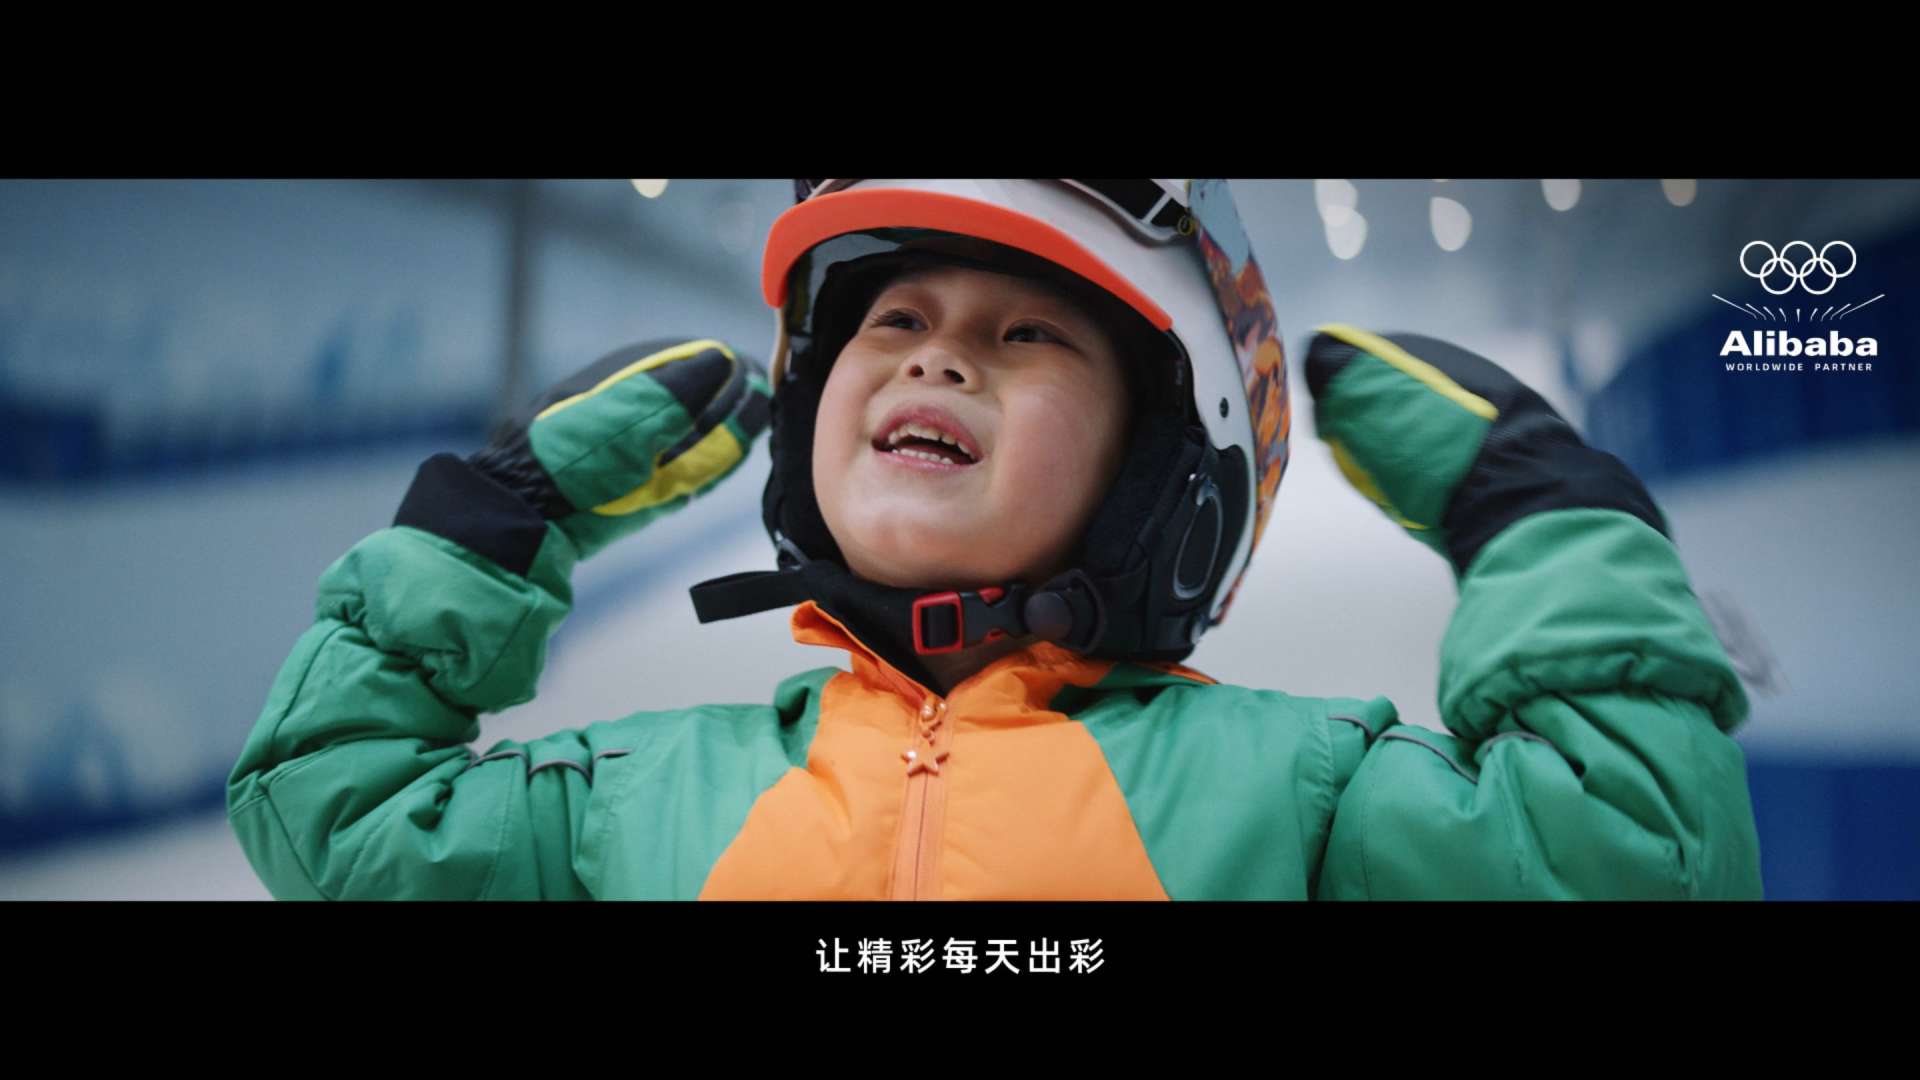 阿里巴巴 × 北京2022年冬奥会 -《父子篇》